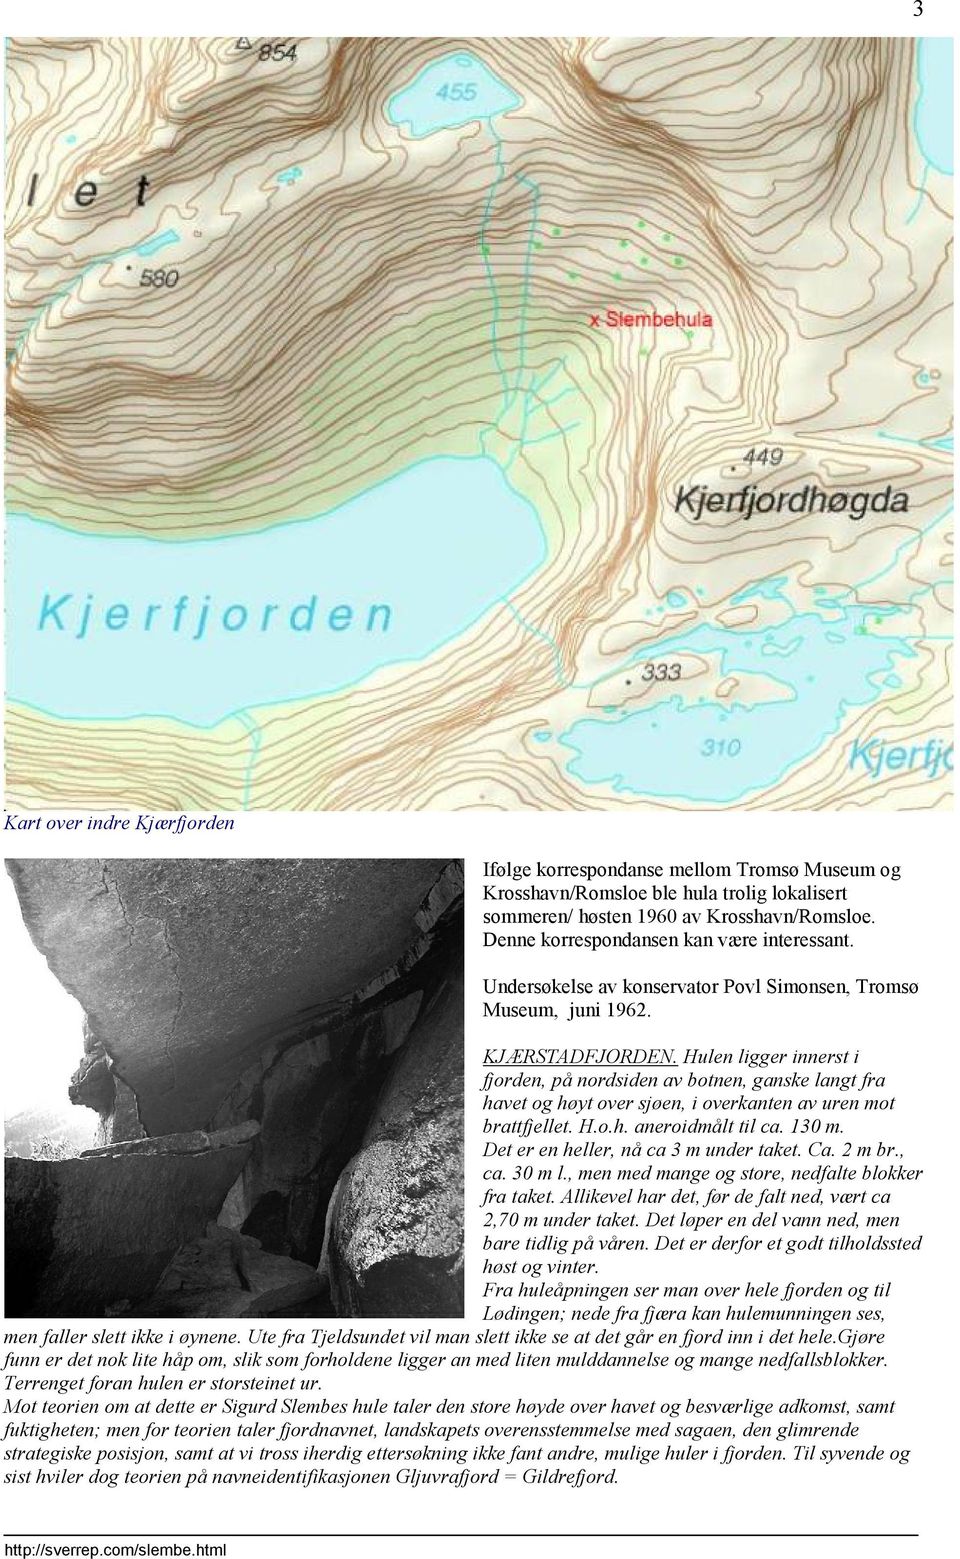 Hulen ligger innerst i fjorden, på nordsiden av botnen, ganske langt fra havet og høyt over sjøen, i overkanten av uren mot brattfjellet. H.o.h. aneroidmålt til ca. 130 m.